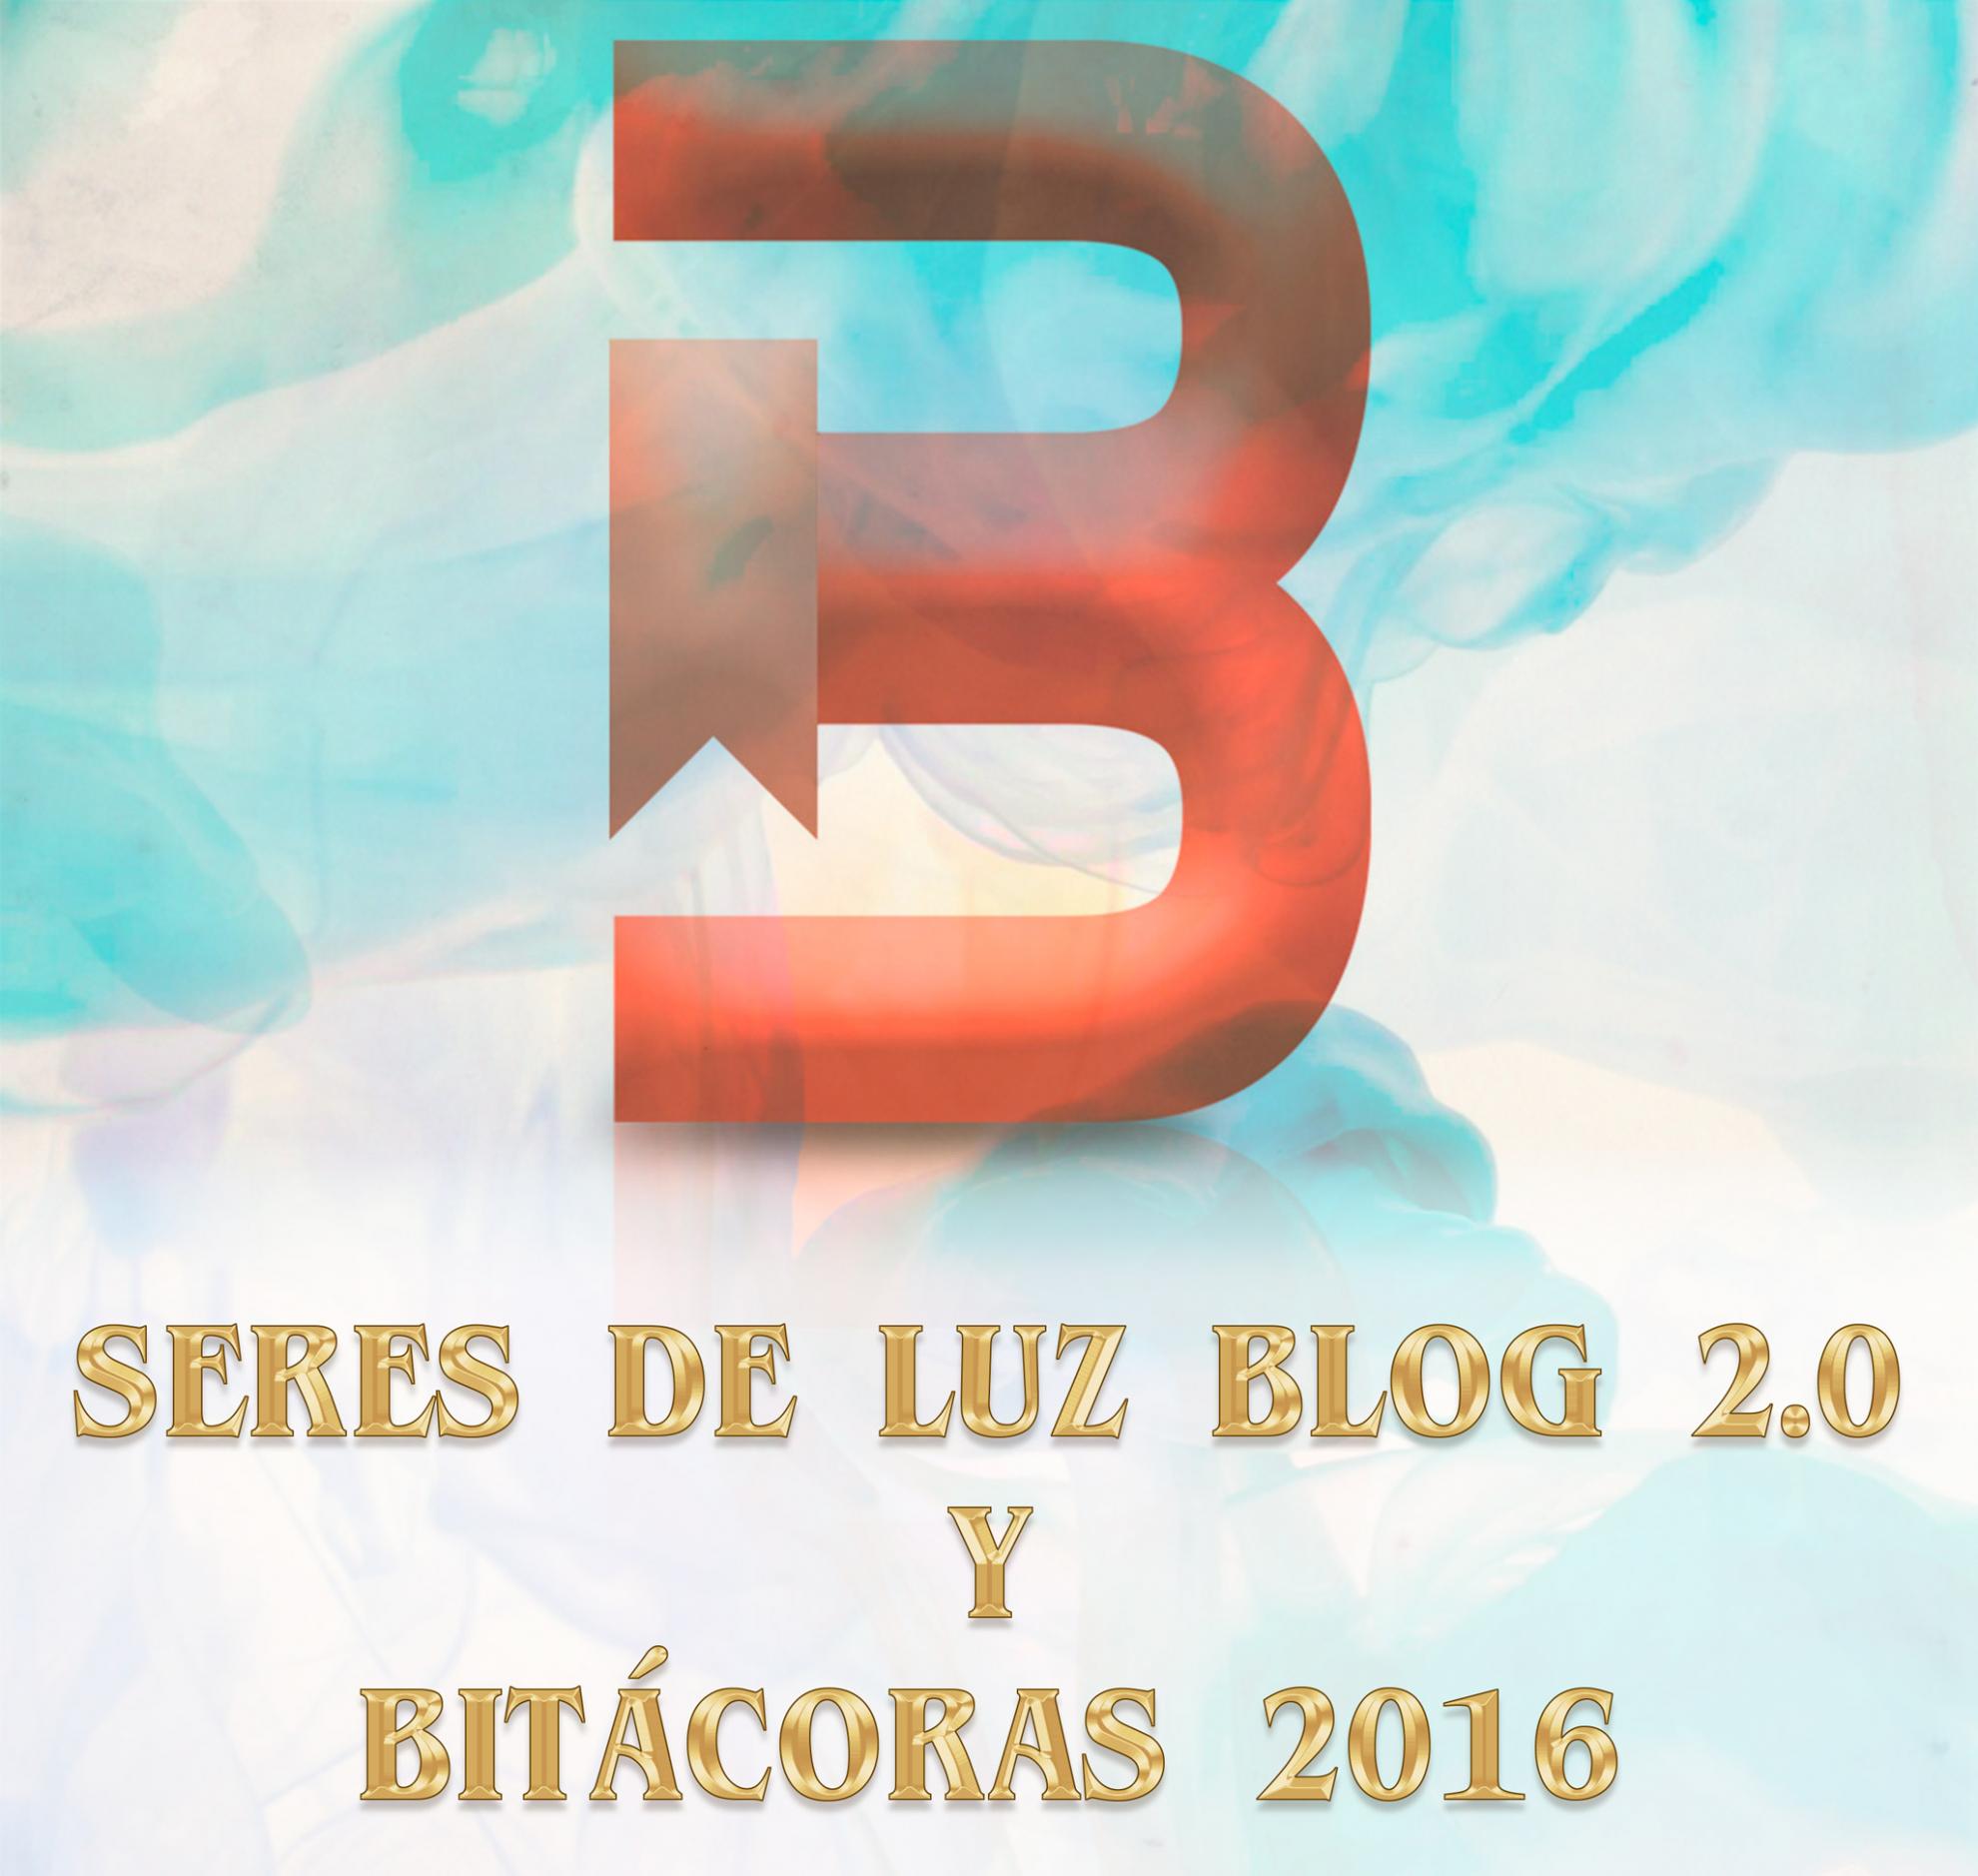 SERES DE LUZ BLOG 2.0 Y BITÁCORAS 2016